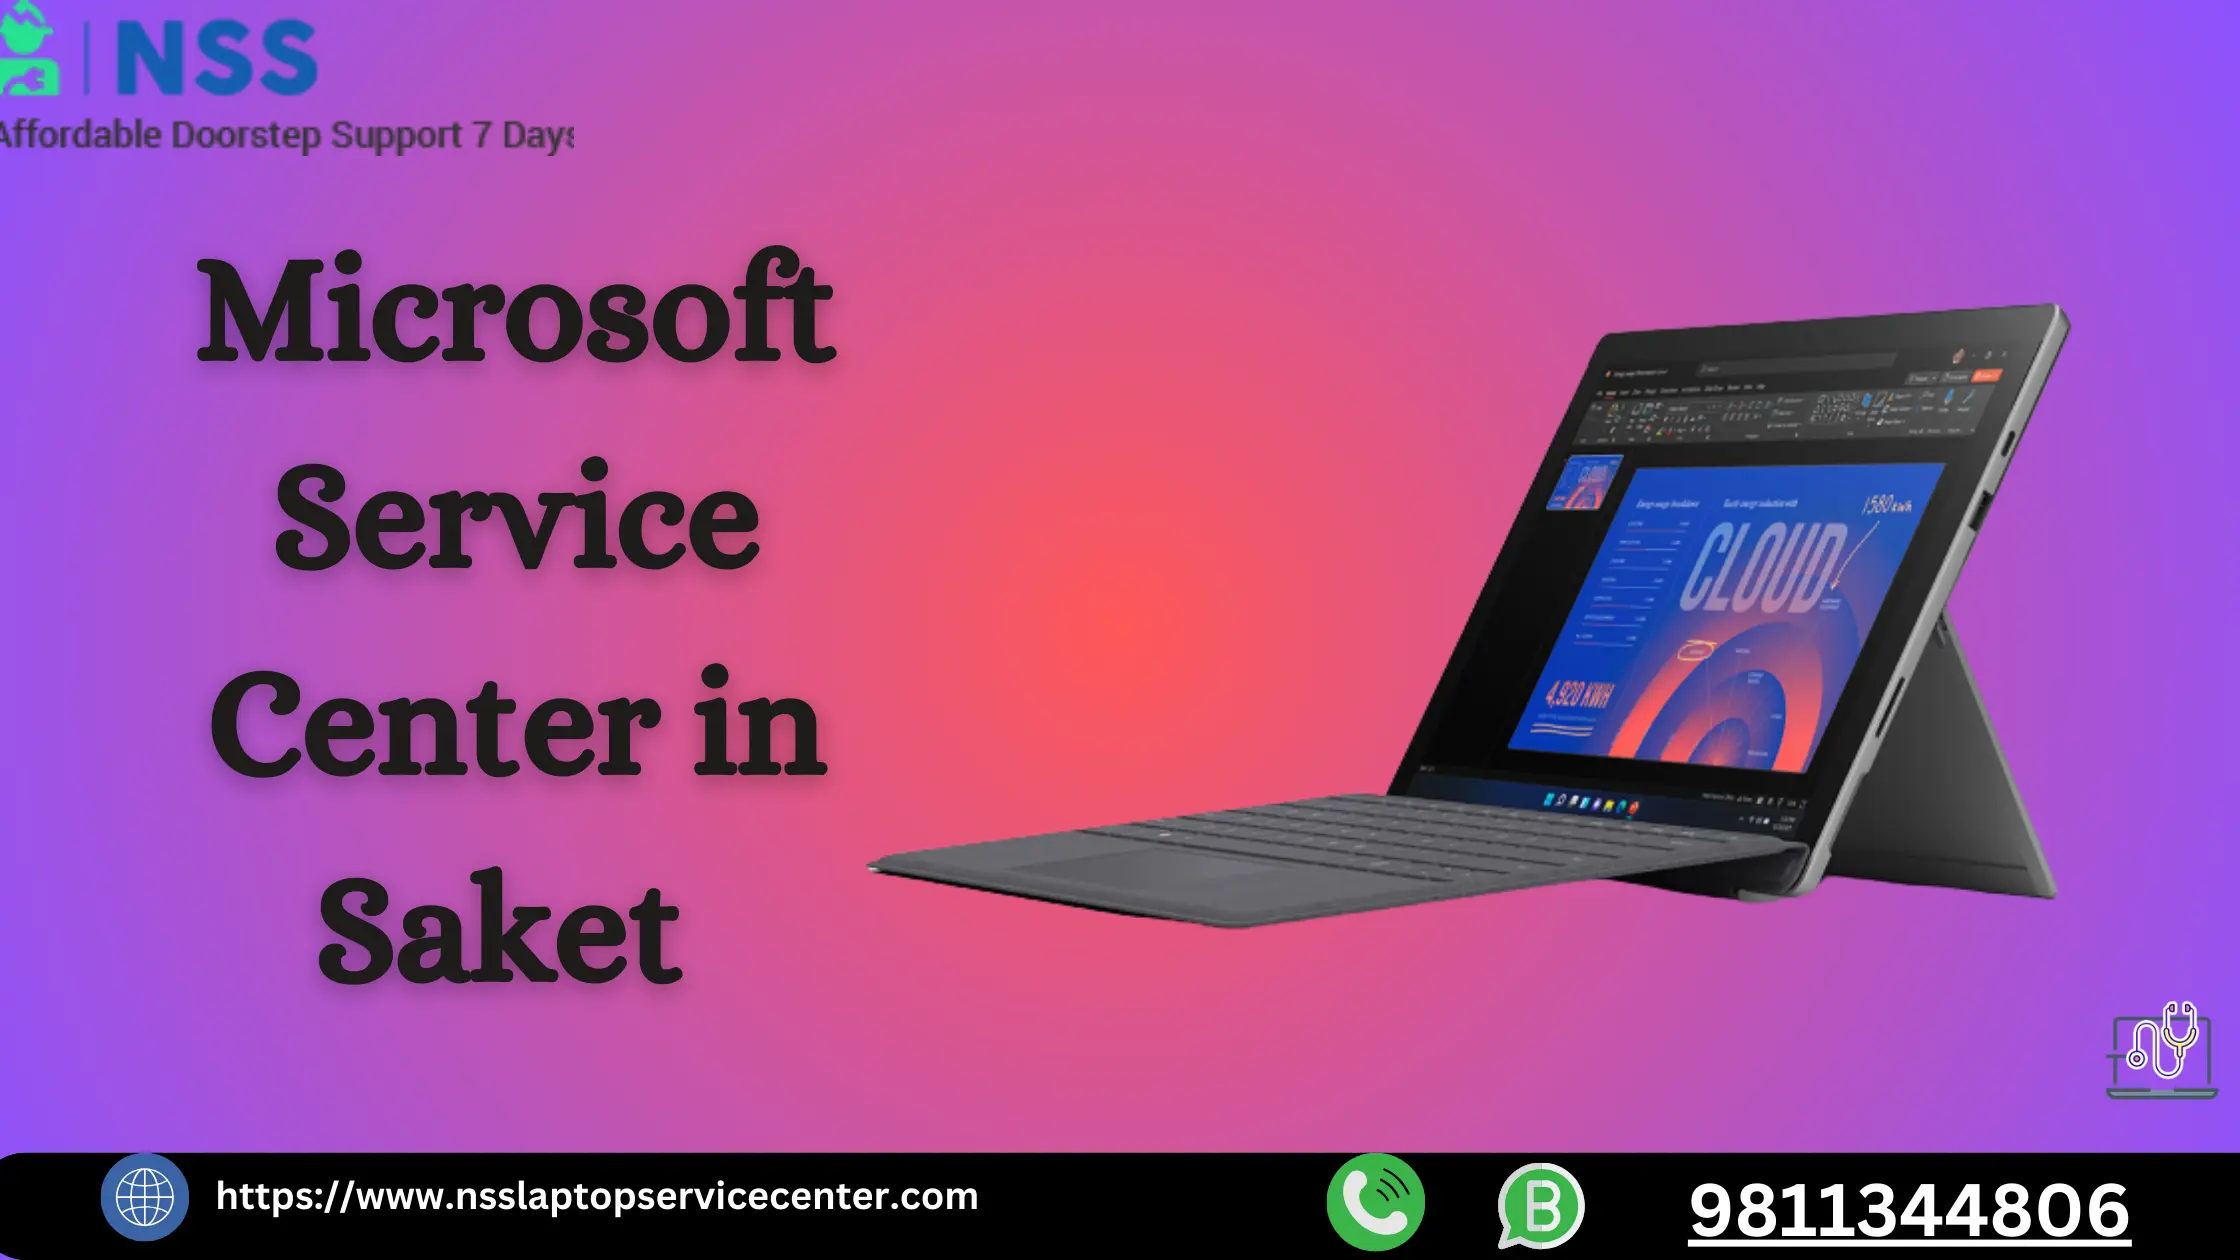 Microsoft Service Center in Saket Near Delhi